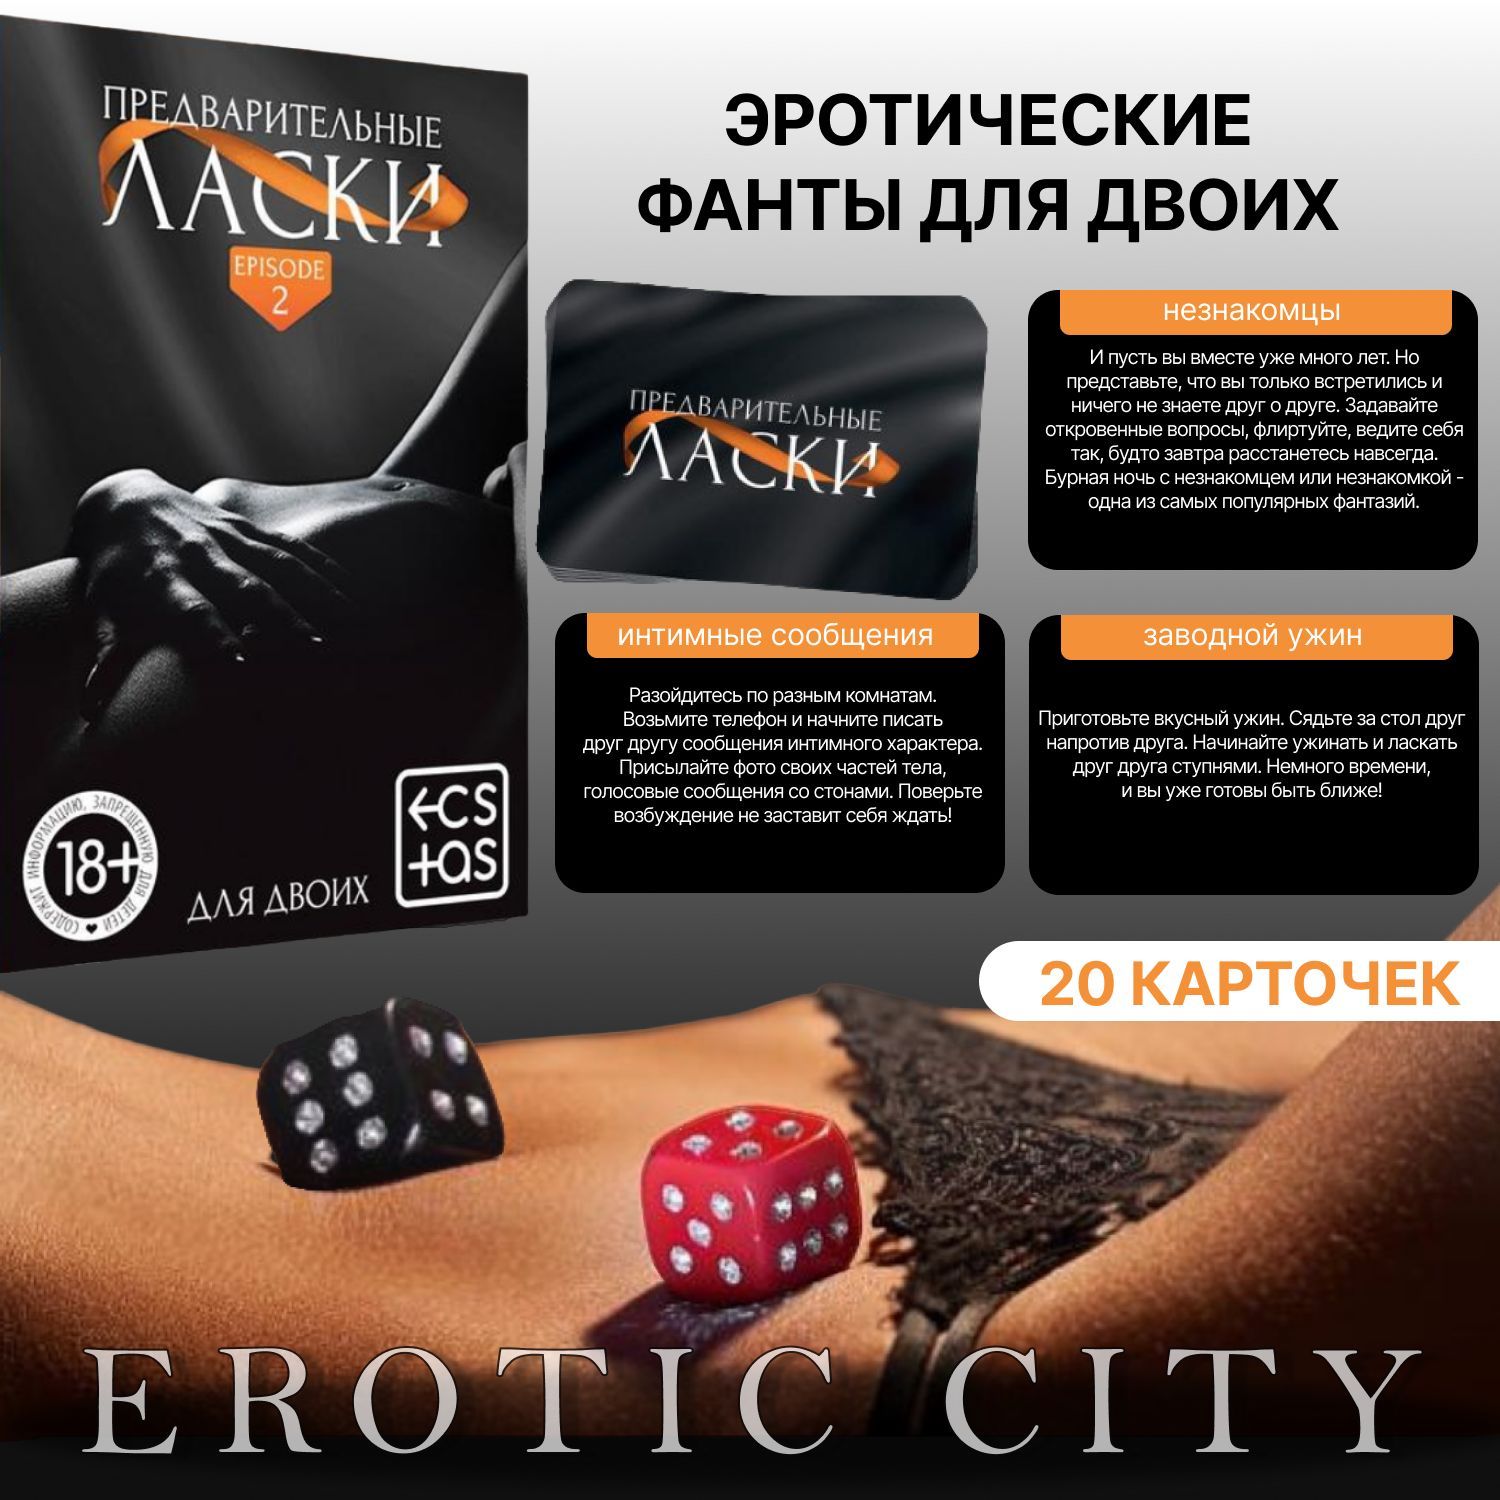 Эротический покер: подборка из 5 игр, которые помогут оживить интимную жизнь